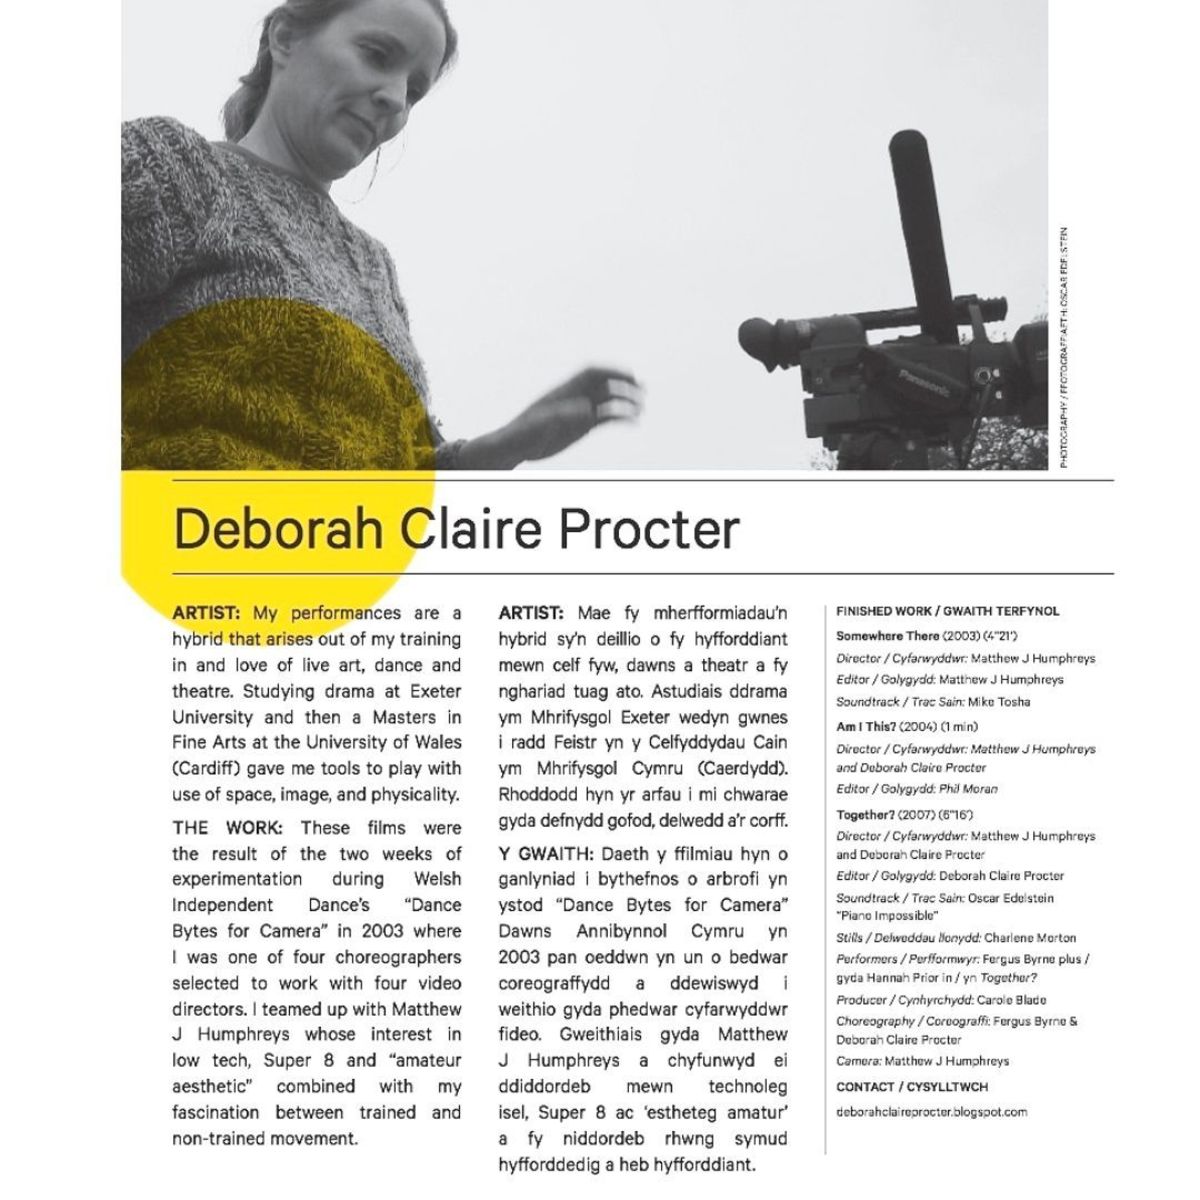 Deborah Claire Procter